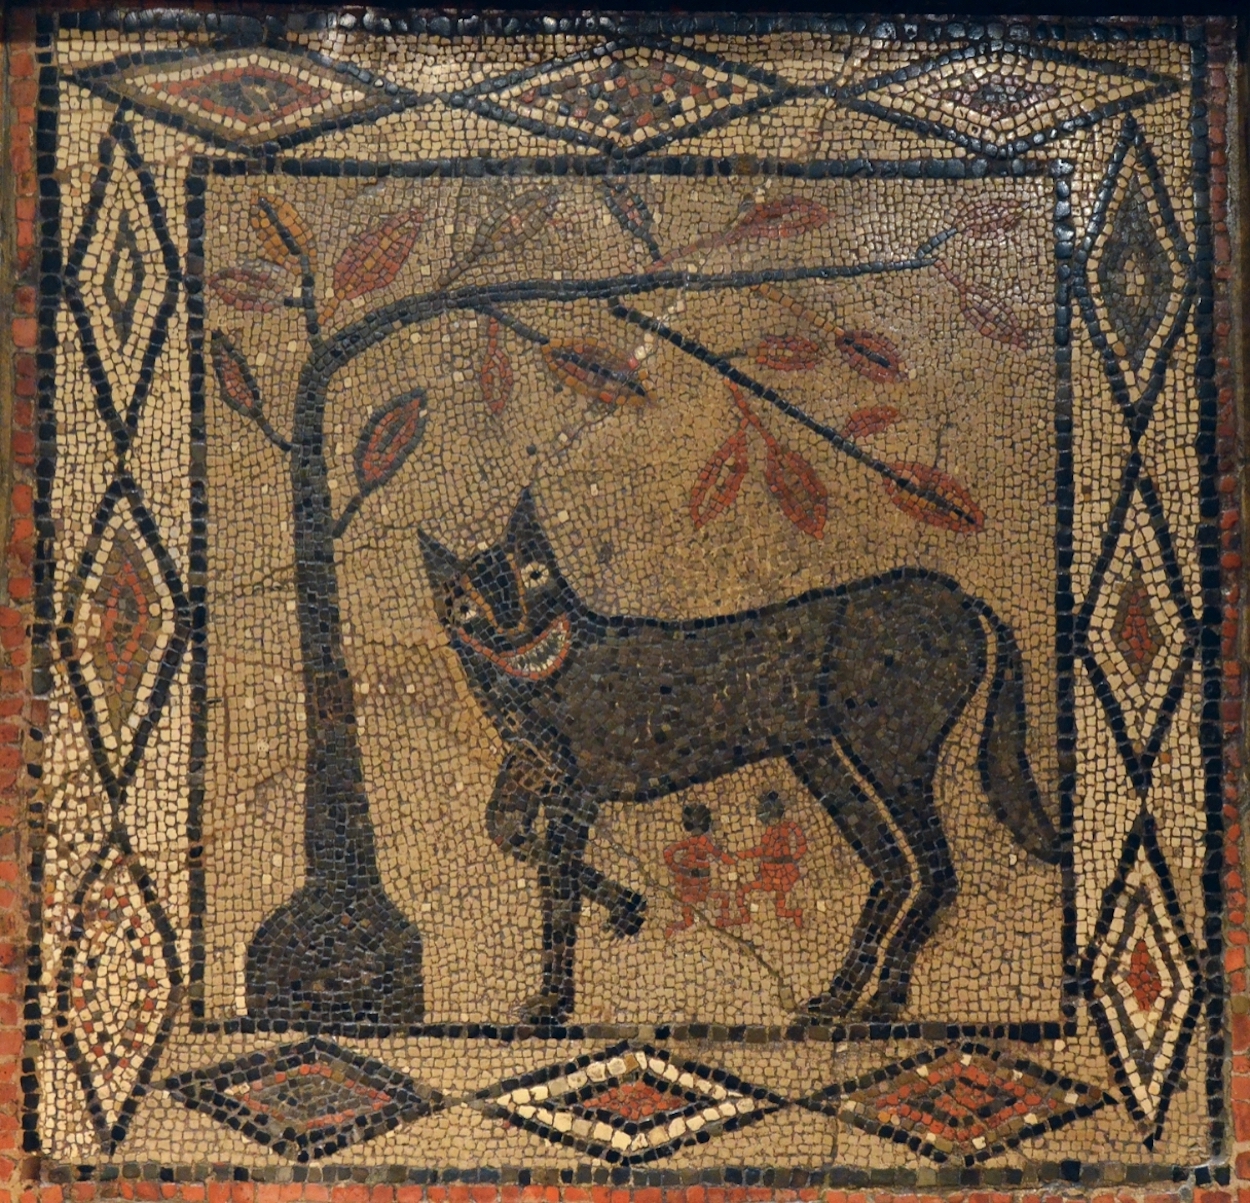 母狼与罗穆卢斯和雷姆斯 by 未知艺术家  - c.300 AD 利茲城市博物館